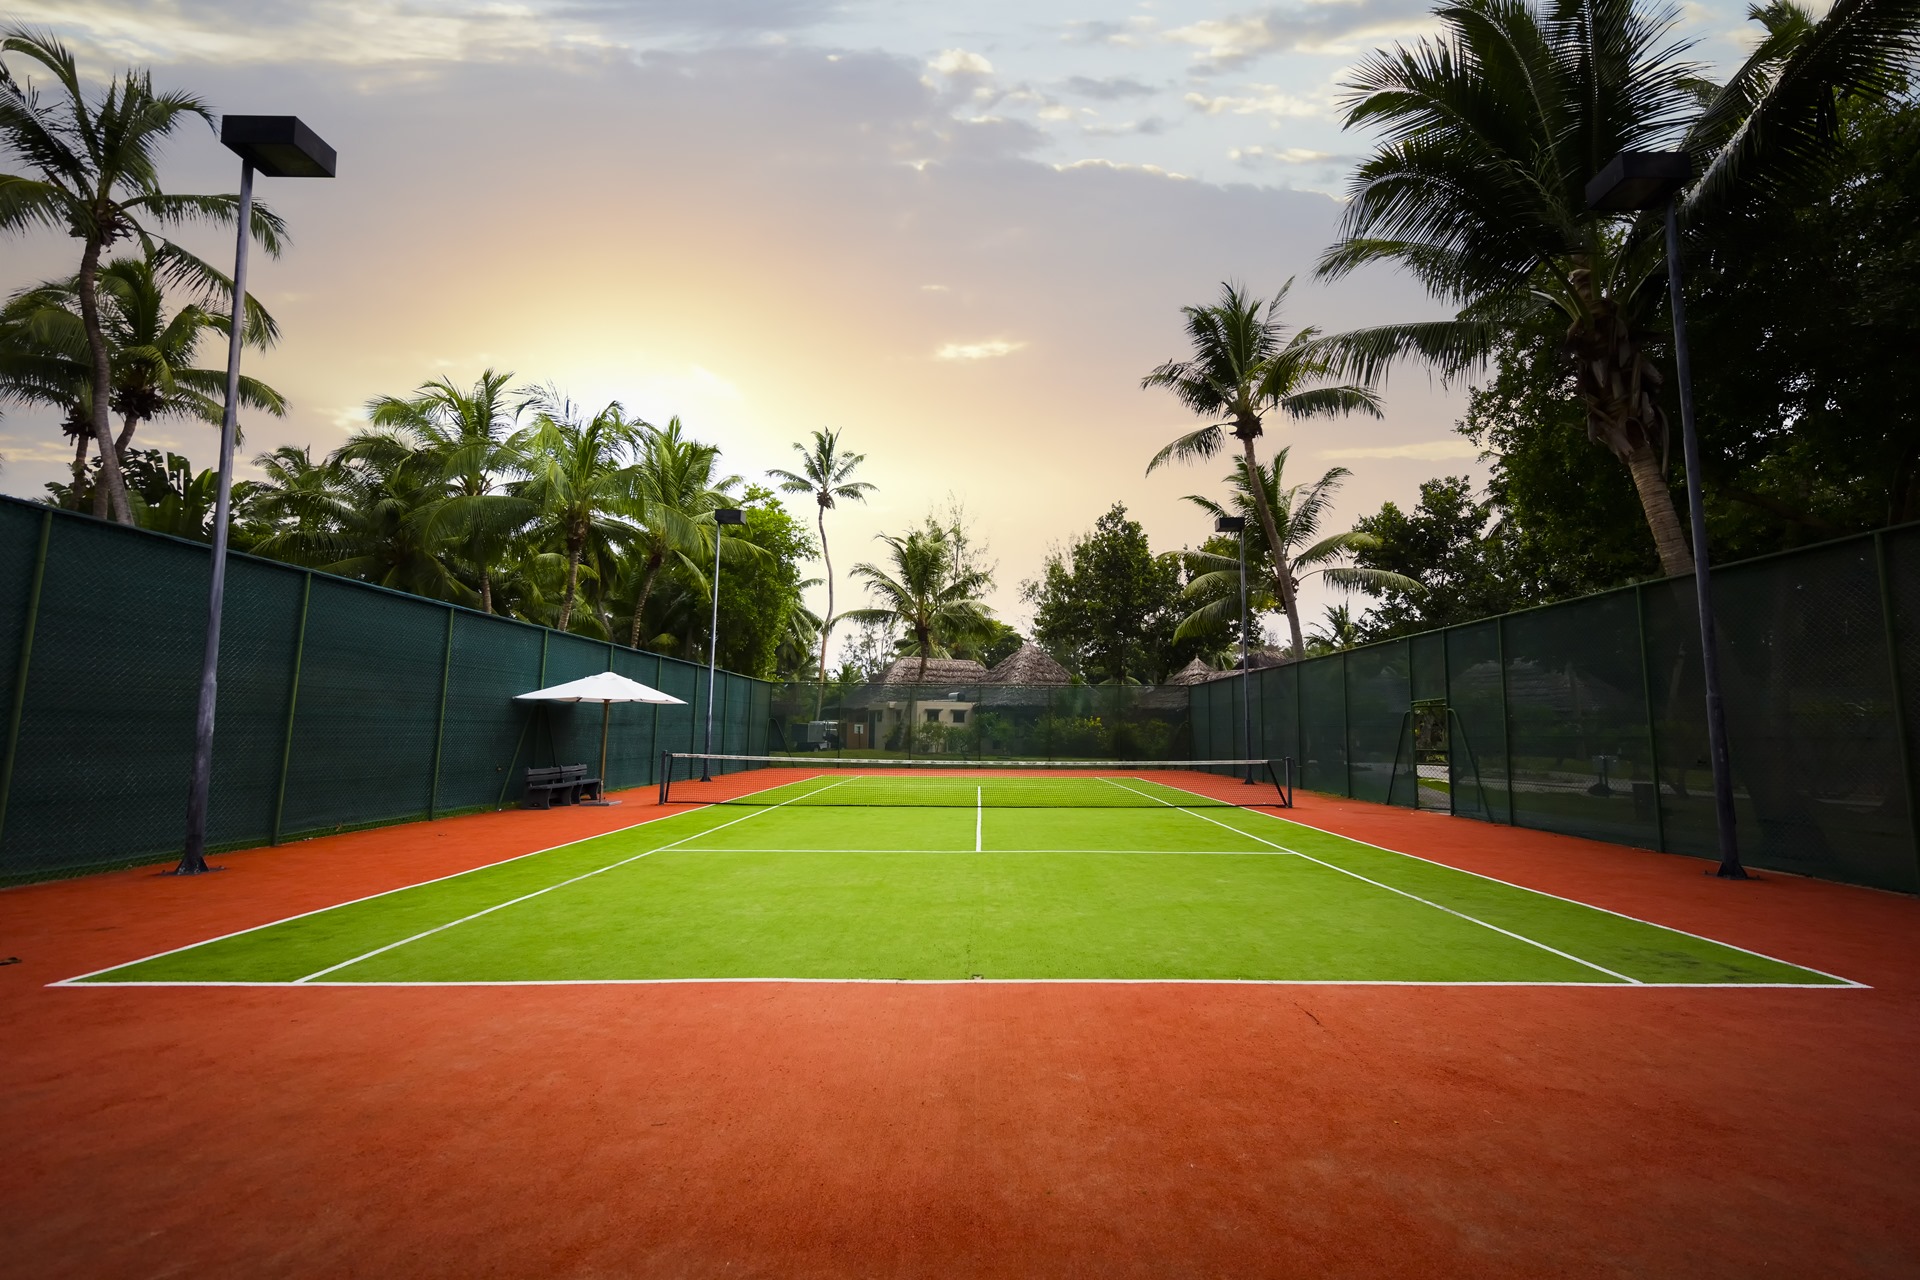 2 теннисных корта. Теннисный корт. Красивый теннисный корт. Теннисный корт пальмы. Закрытый теннисный корт.